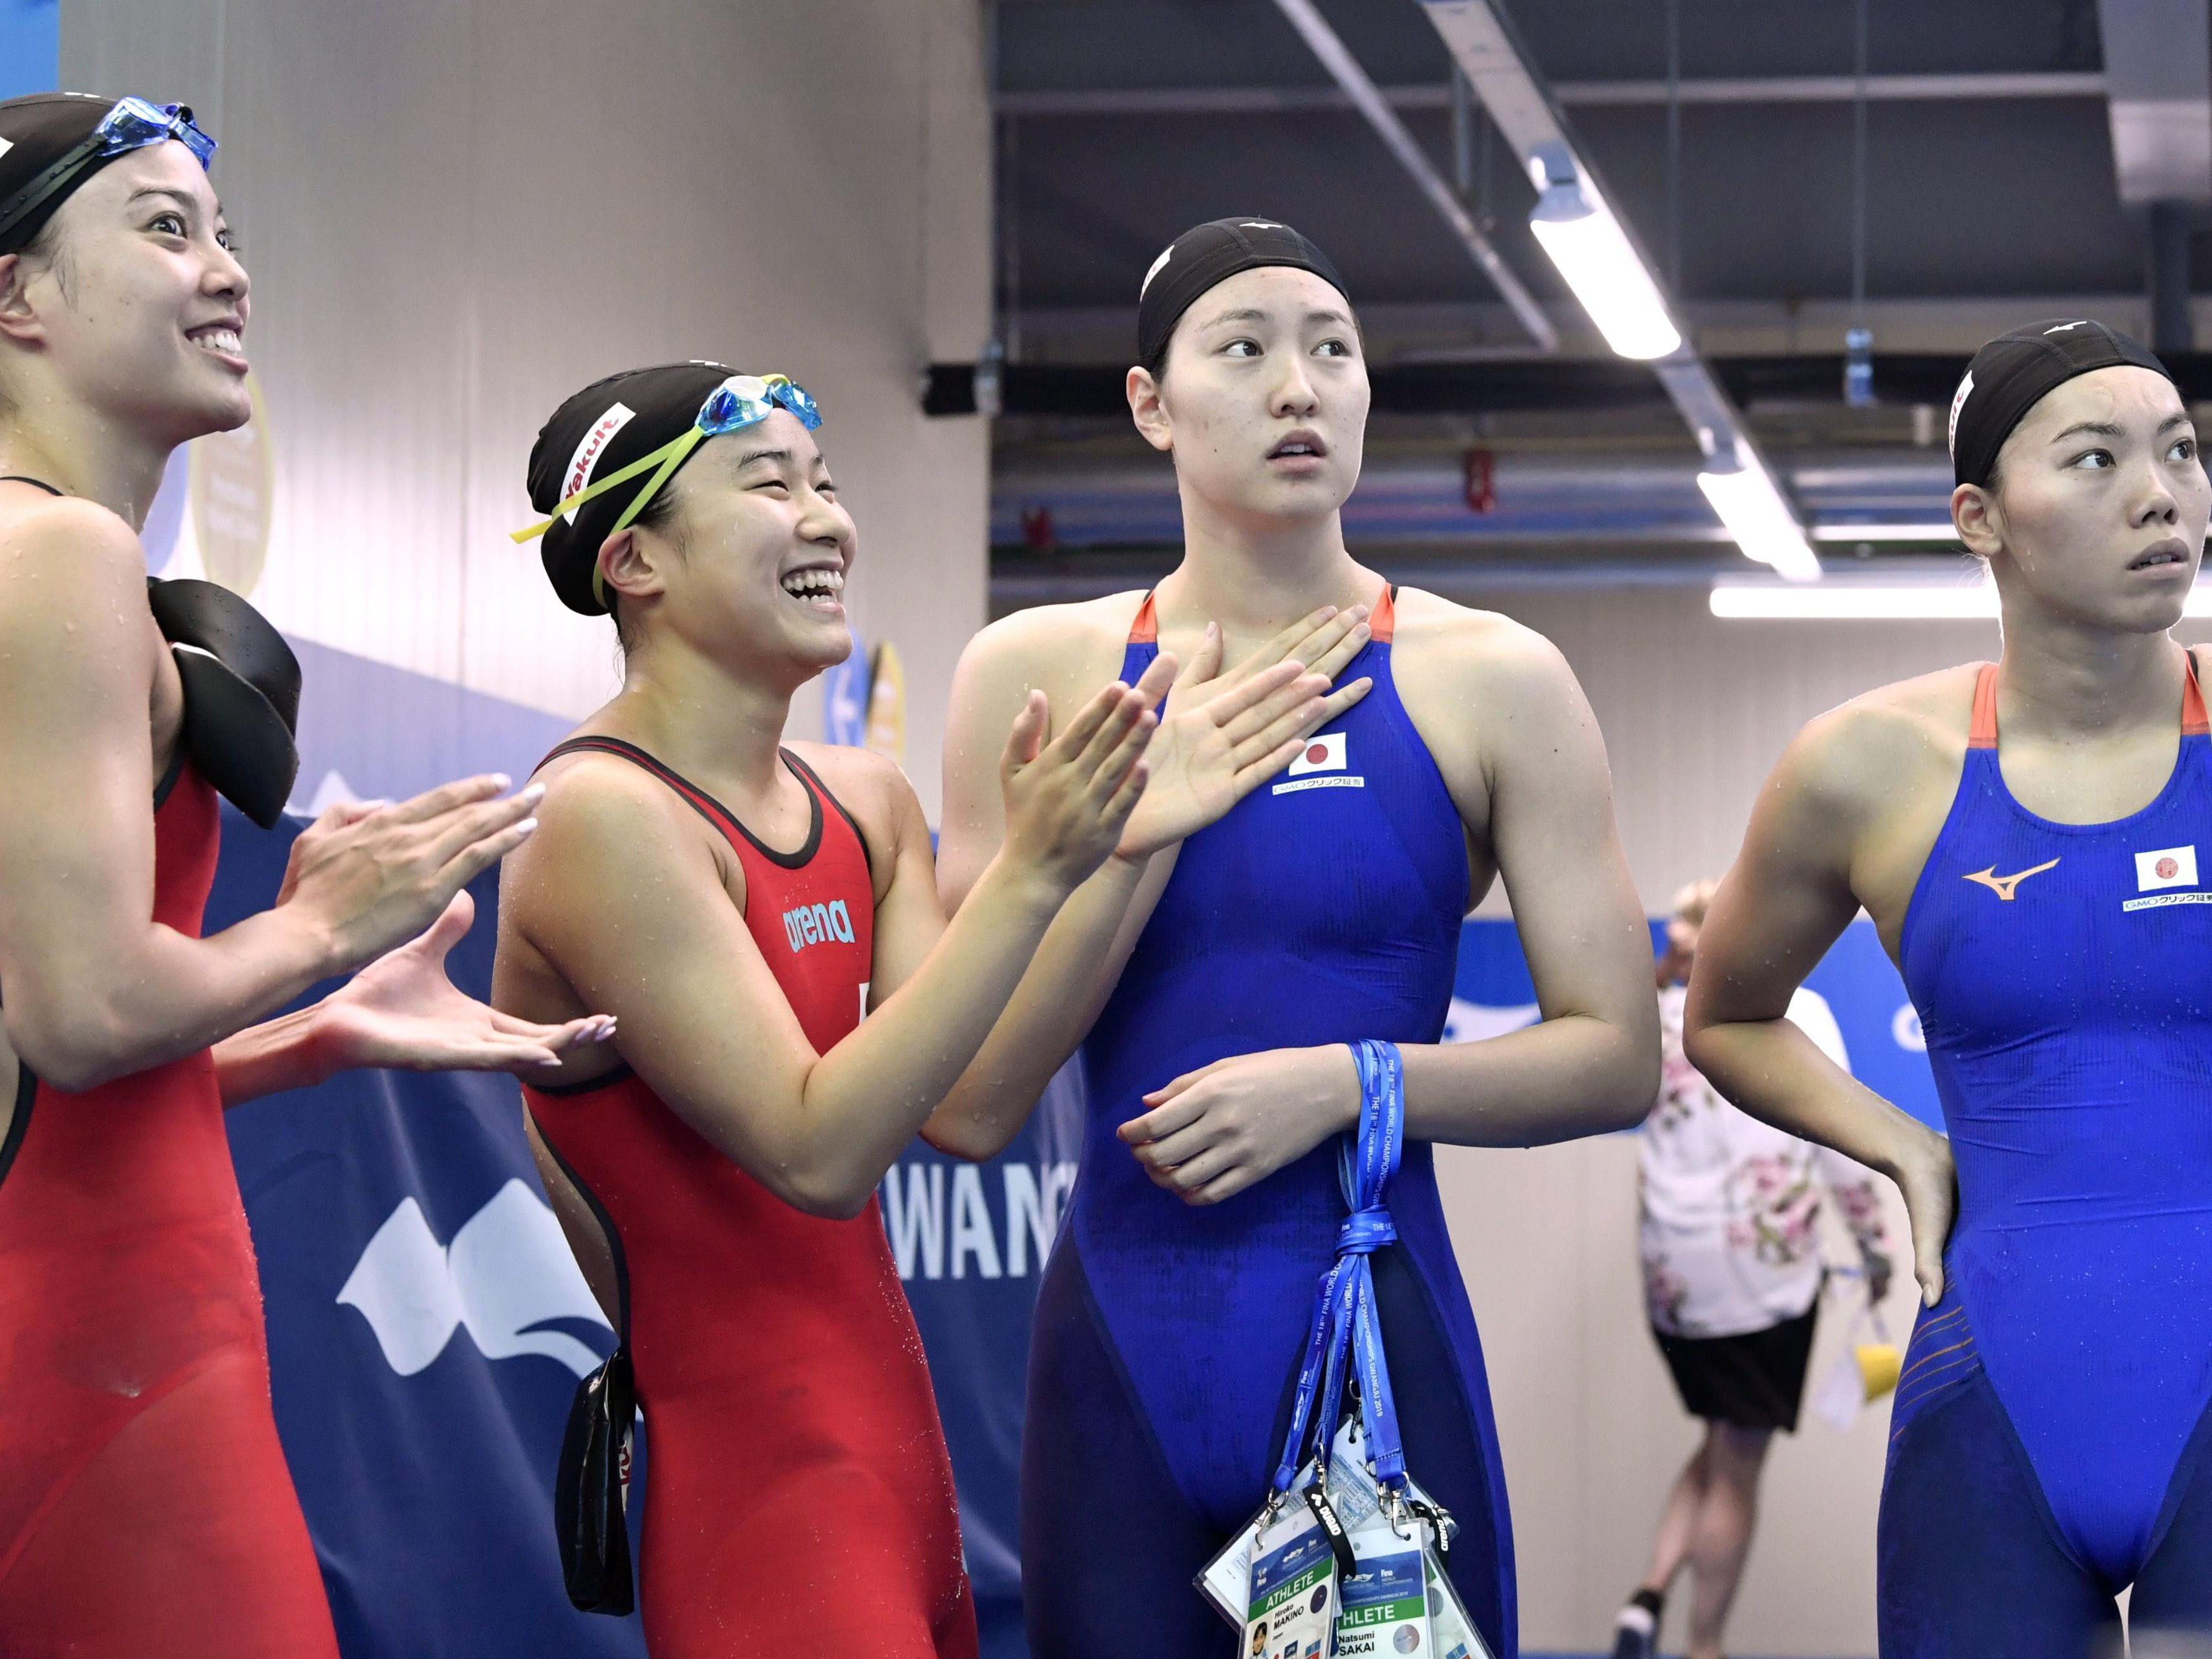 露わになった日本競泳陣の課題。女子強化と若手の発掘が急務だ